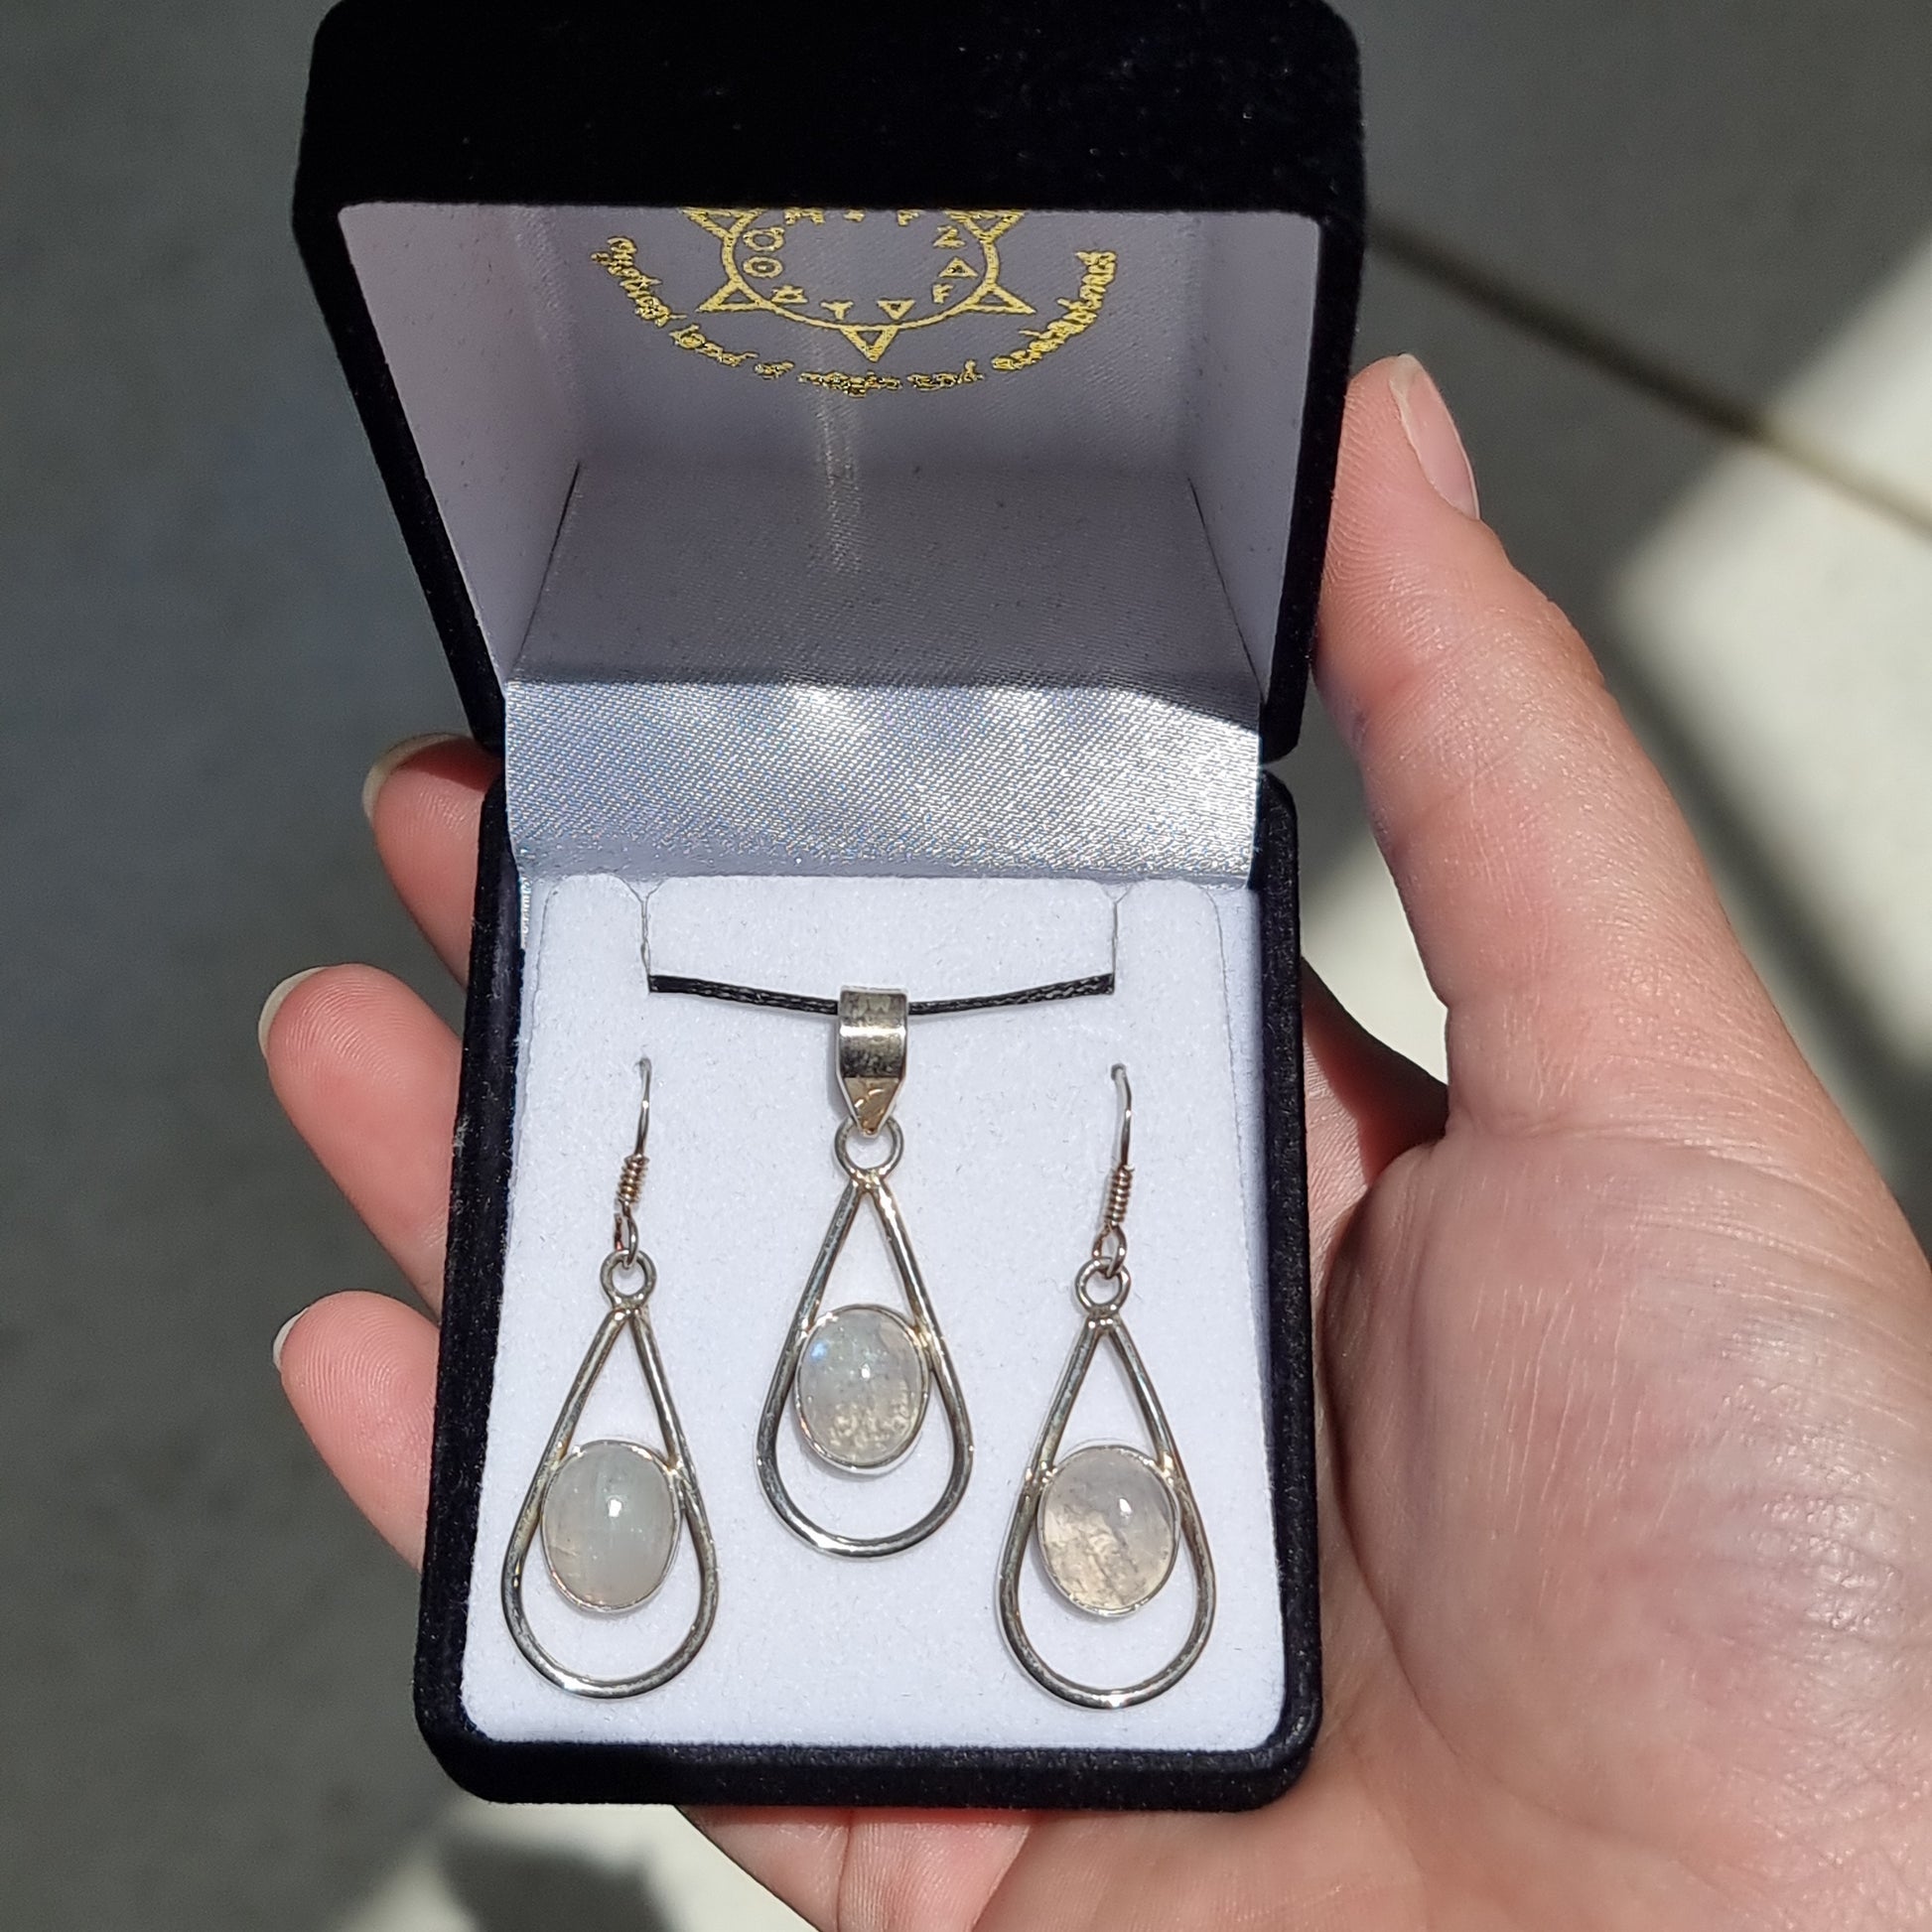 Moonstone pendant & earrings set - Rivendell Shop